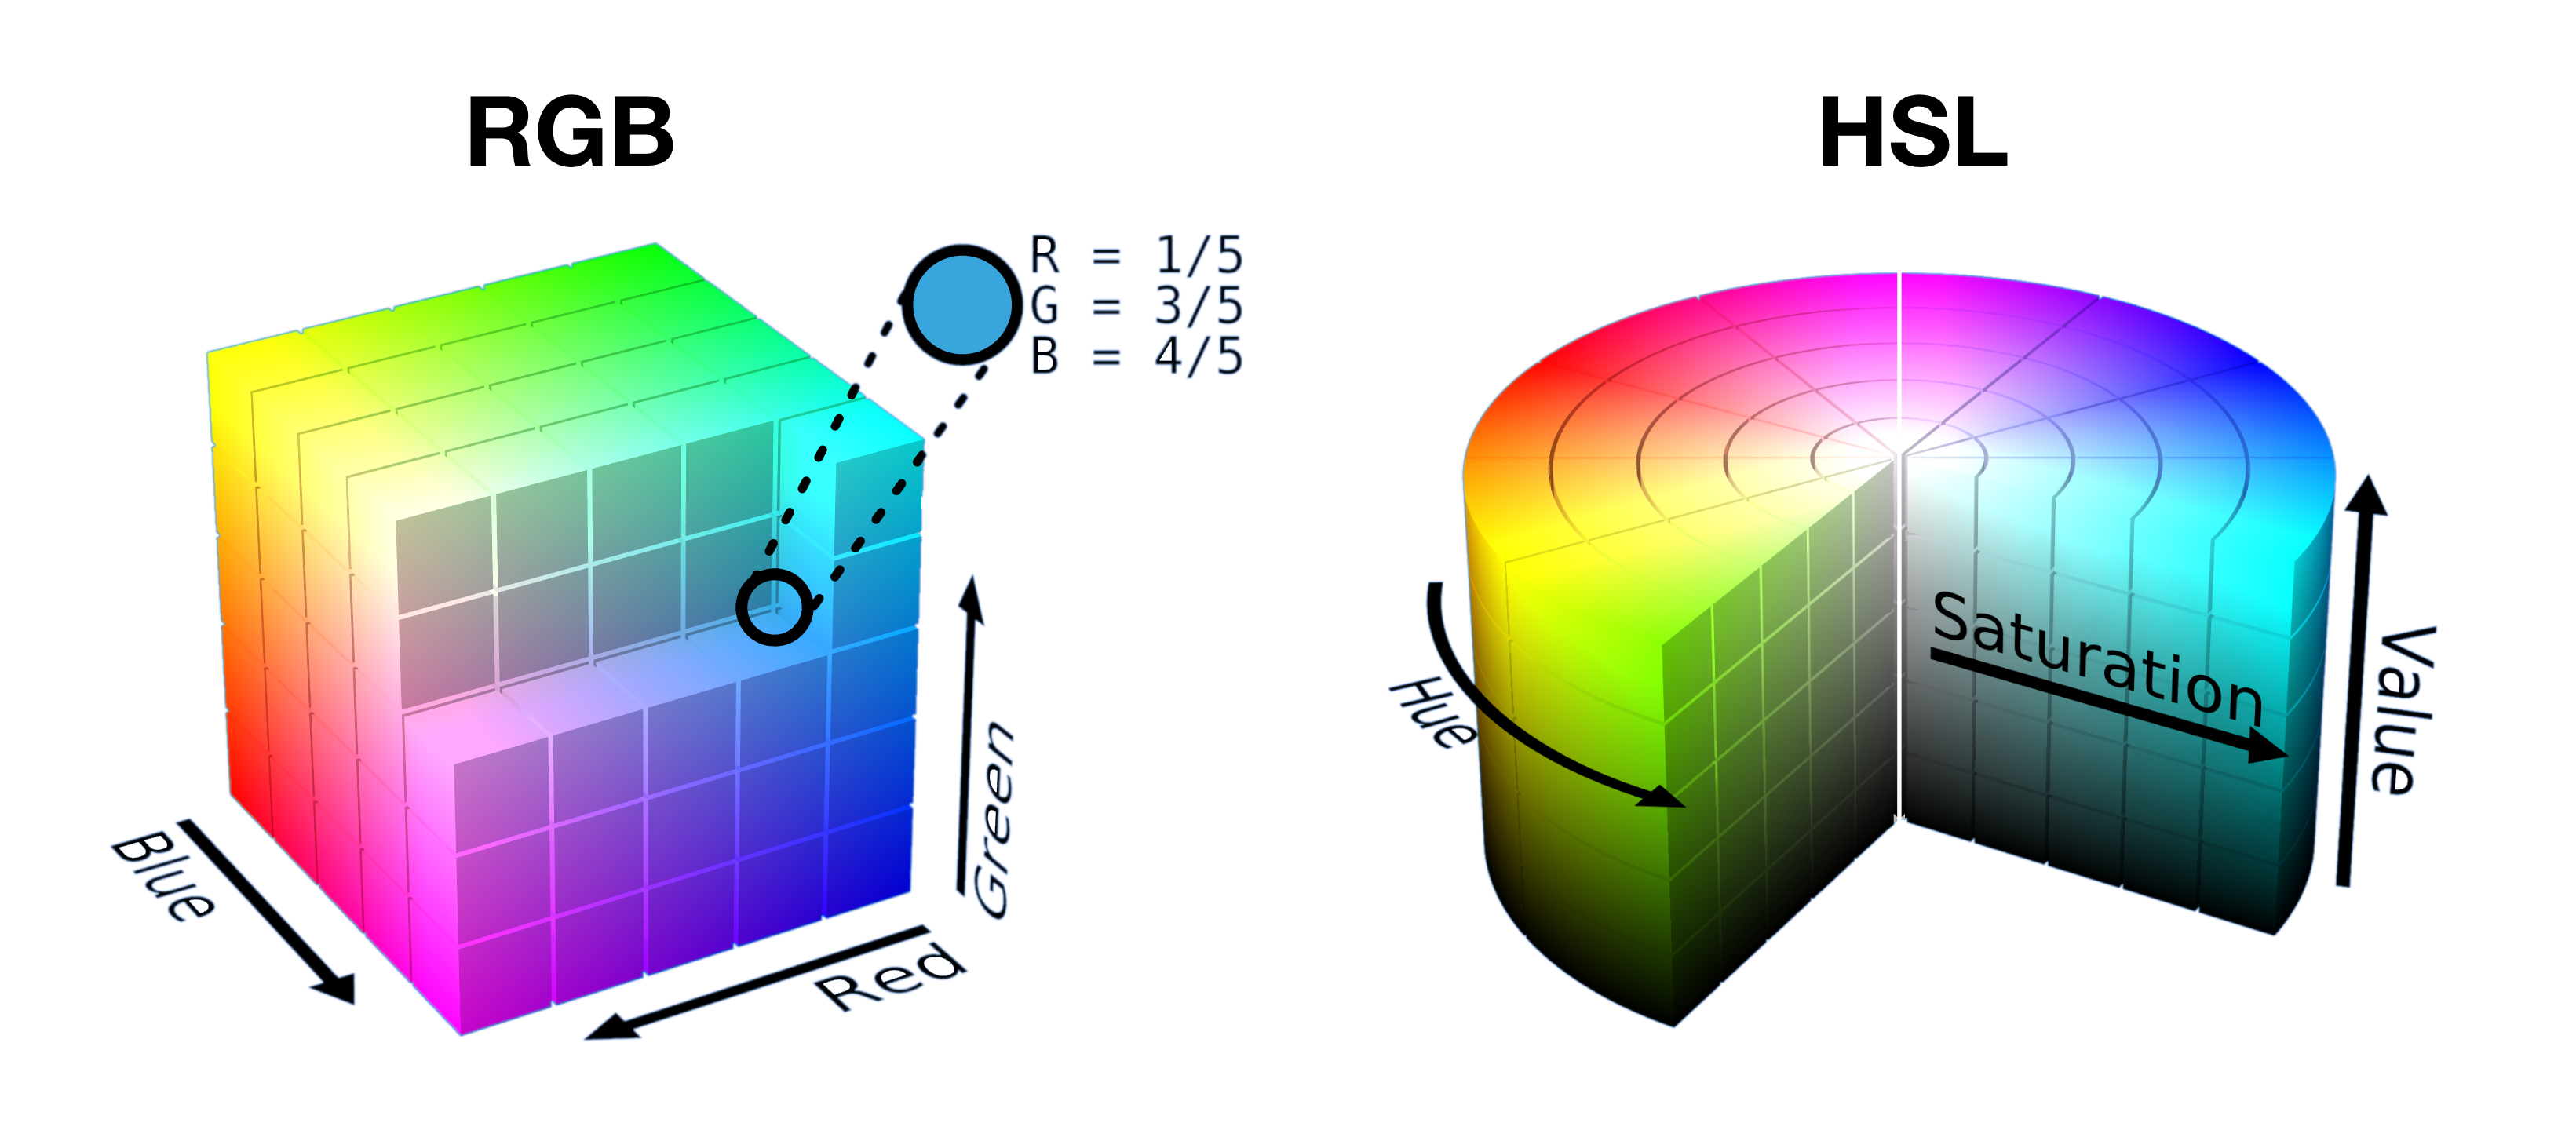 קוביית RGB פתוחה למחצה ופרוסות לגליל HSL מוצגים זה לצד זה כדי להראות איך הצבעים נדחסים בצורה כלשהי בכל מרחב.